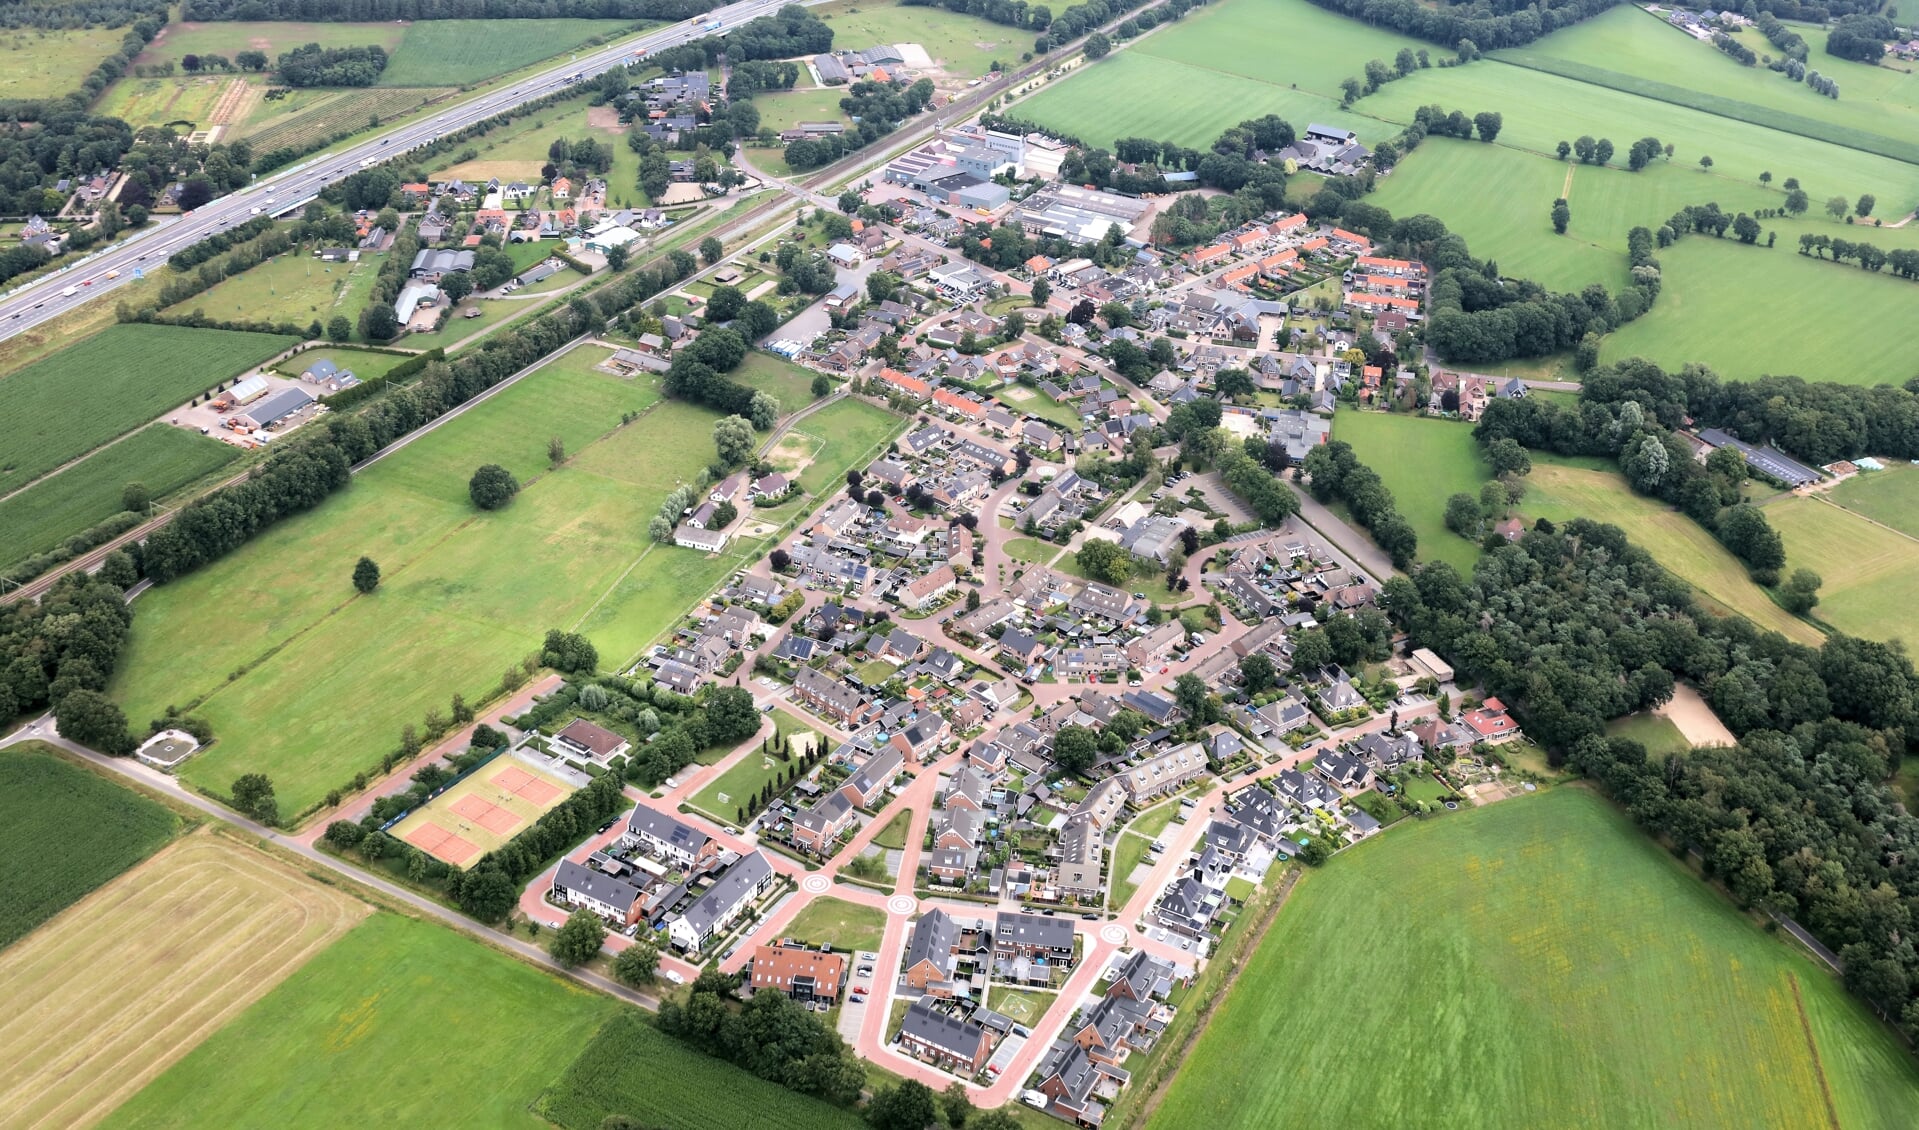 Luchtfoto van Stroe. De nieuwe wijk Wulperveld komt op het terrein aan de linkerkant, tussen het dorp en de spoorlijn.